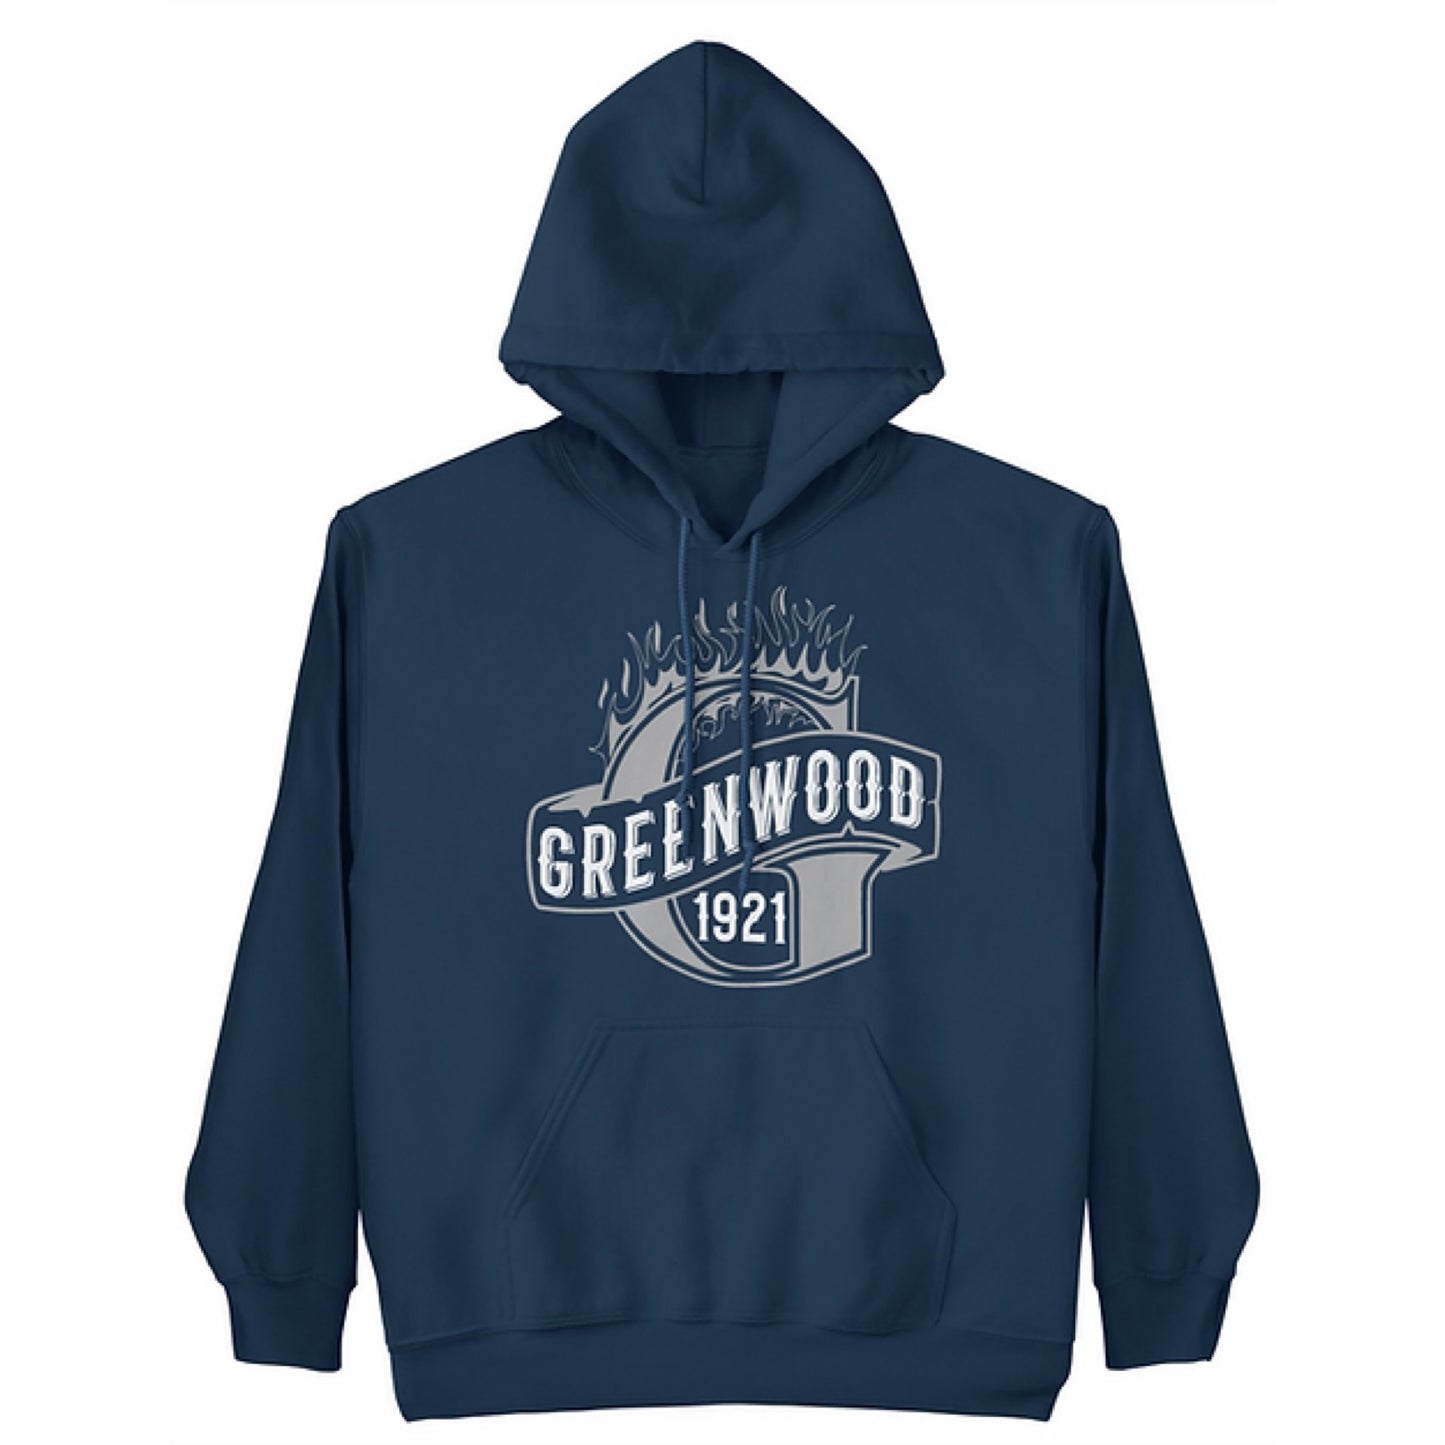 Greenwood 1921 Hoodie